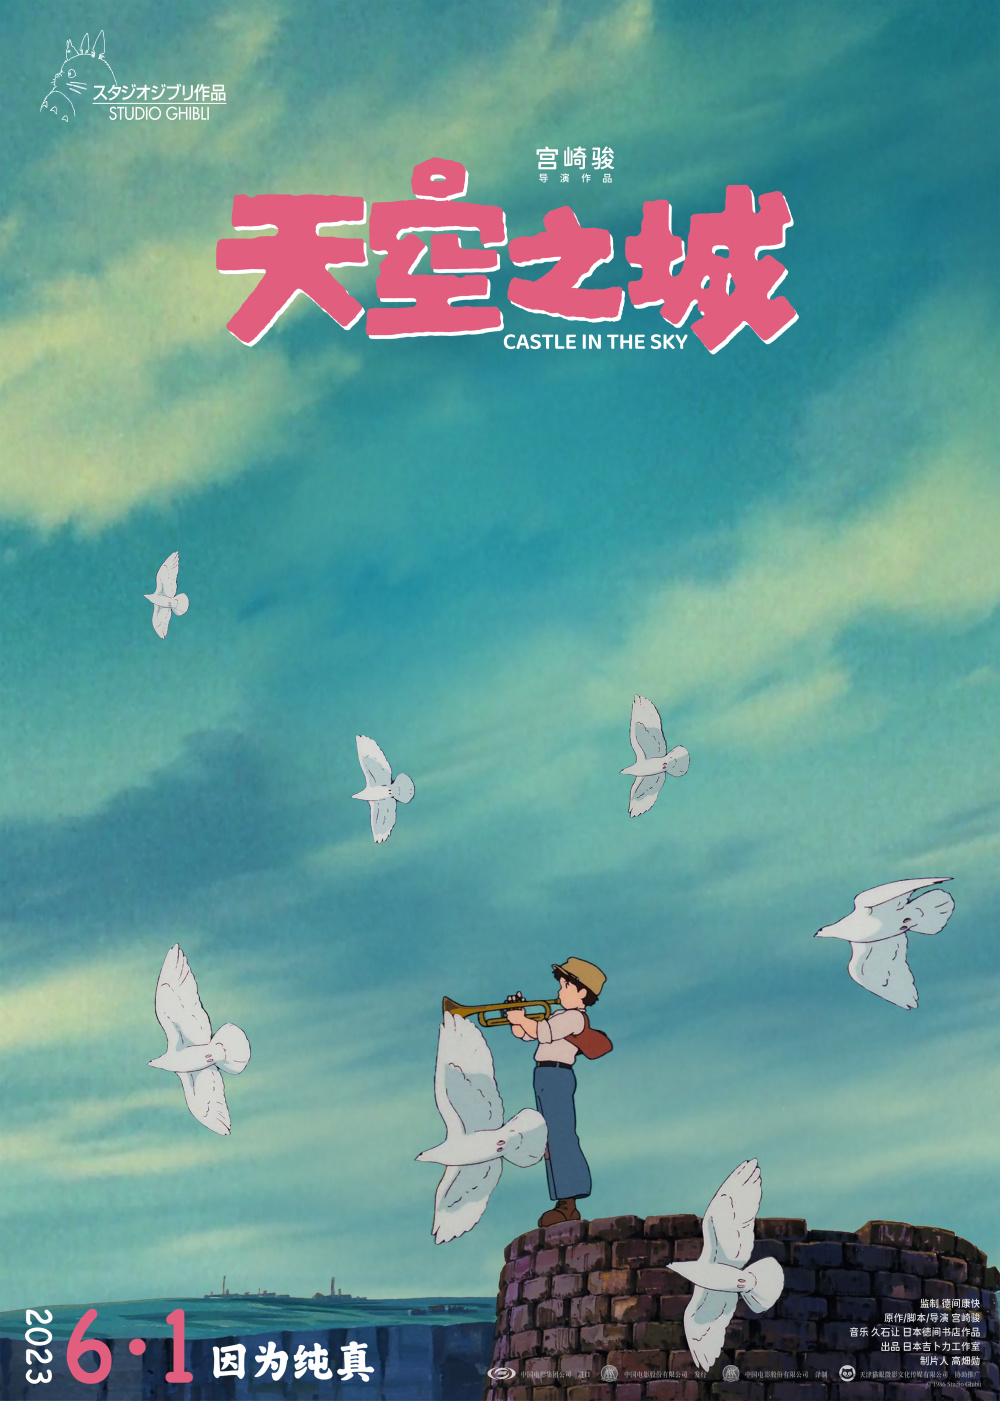 宫崎骏的《天空之城》：永恒的美好与梦想执着